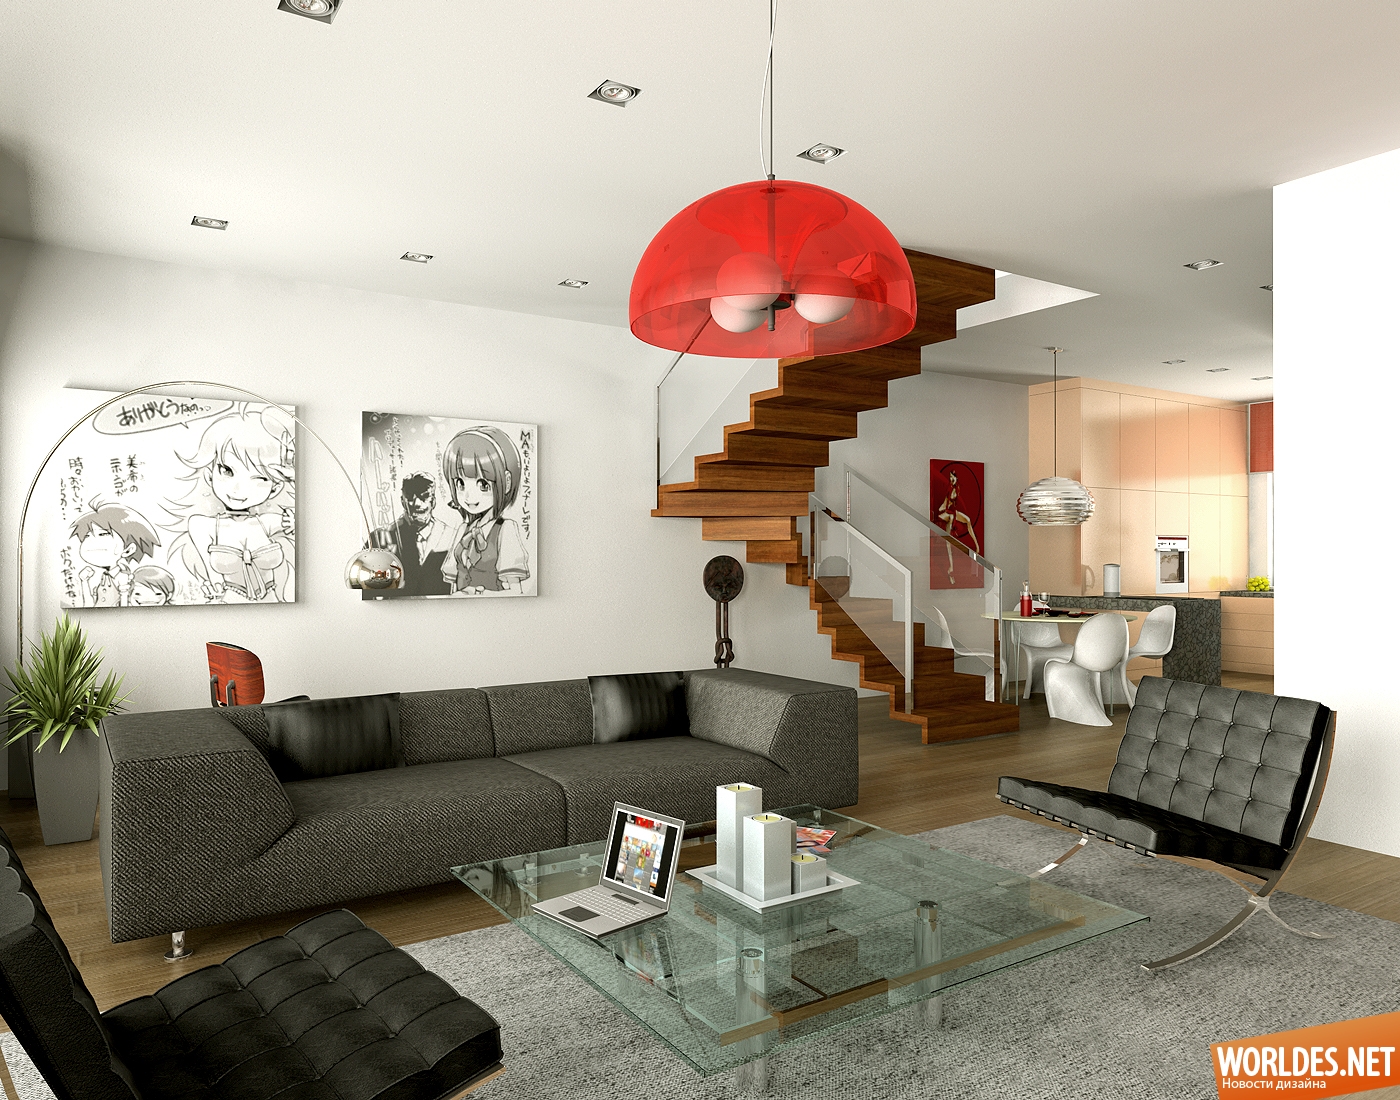 дизайн интерьеров, дизайн интерьера гостиных комнат, гостиные комнаты, стильные гостиные комнаты, гостиные в красно-белых цветах